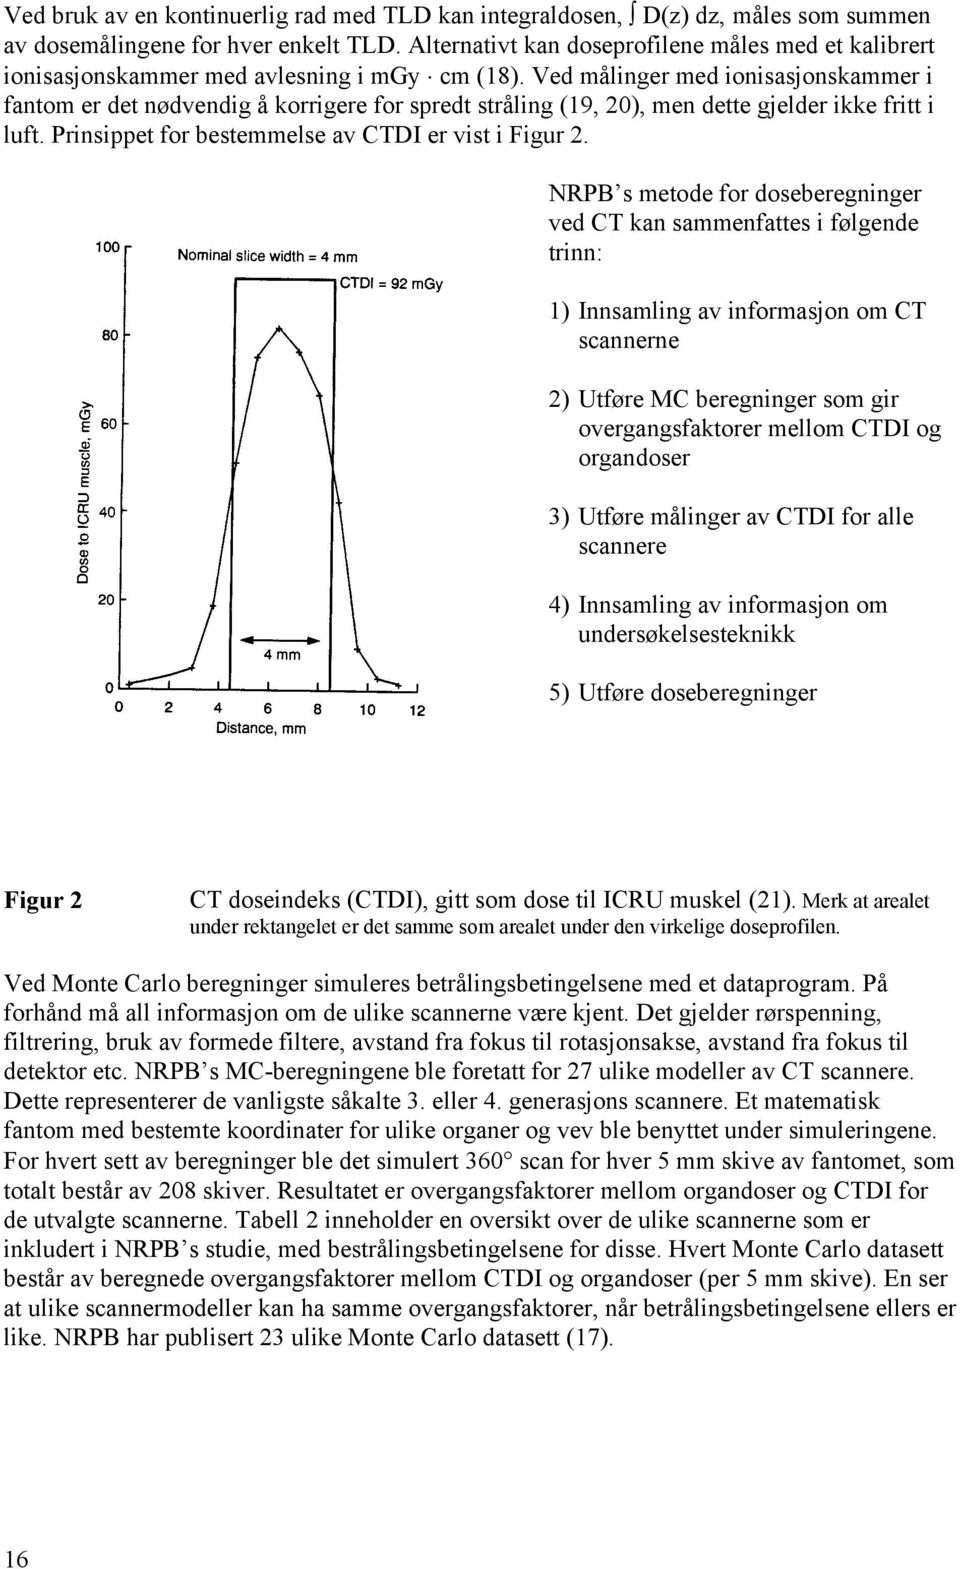 Ved målinger med ionisasjonskammer i fantom er det nødvendig å korrigere for spredt stråling (19, 20), men dette gjelder ikke fritt i luft. Prinsippet for bestemmelse av CTDI er vist i Figur 2.